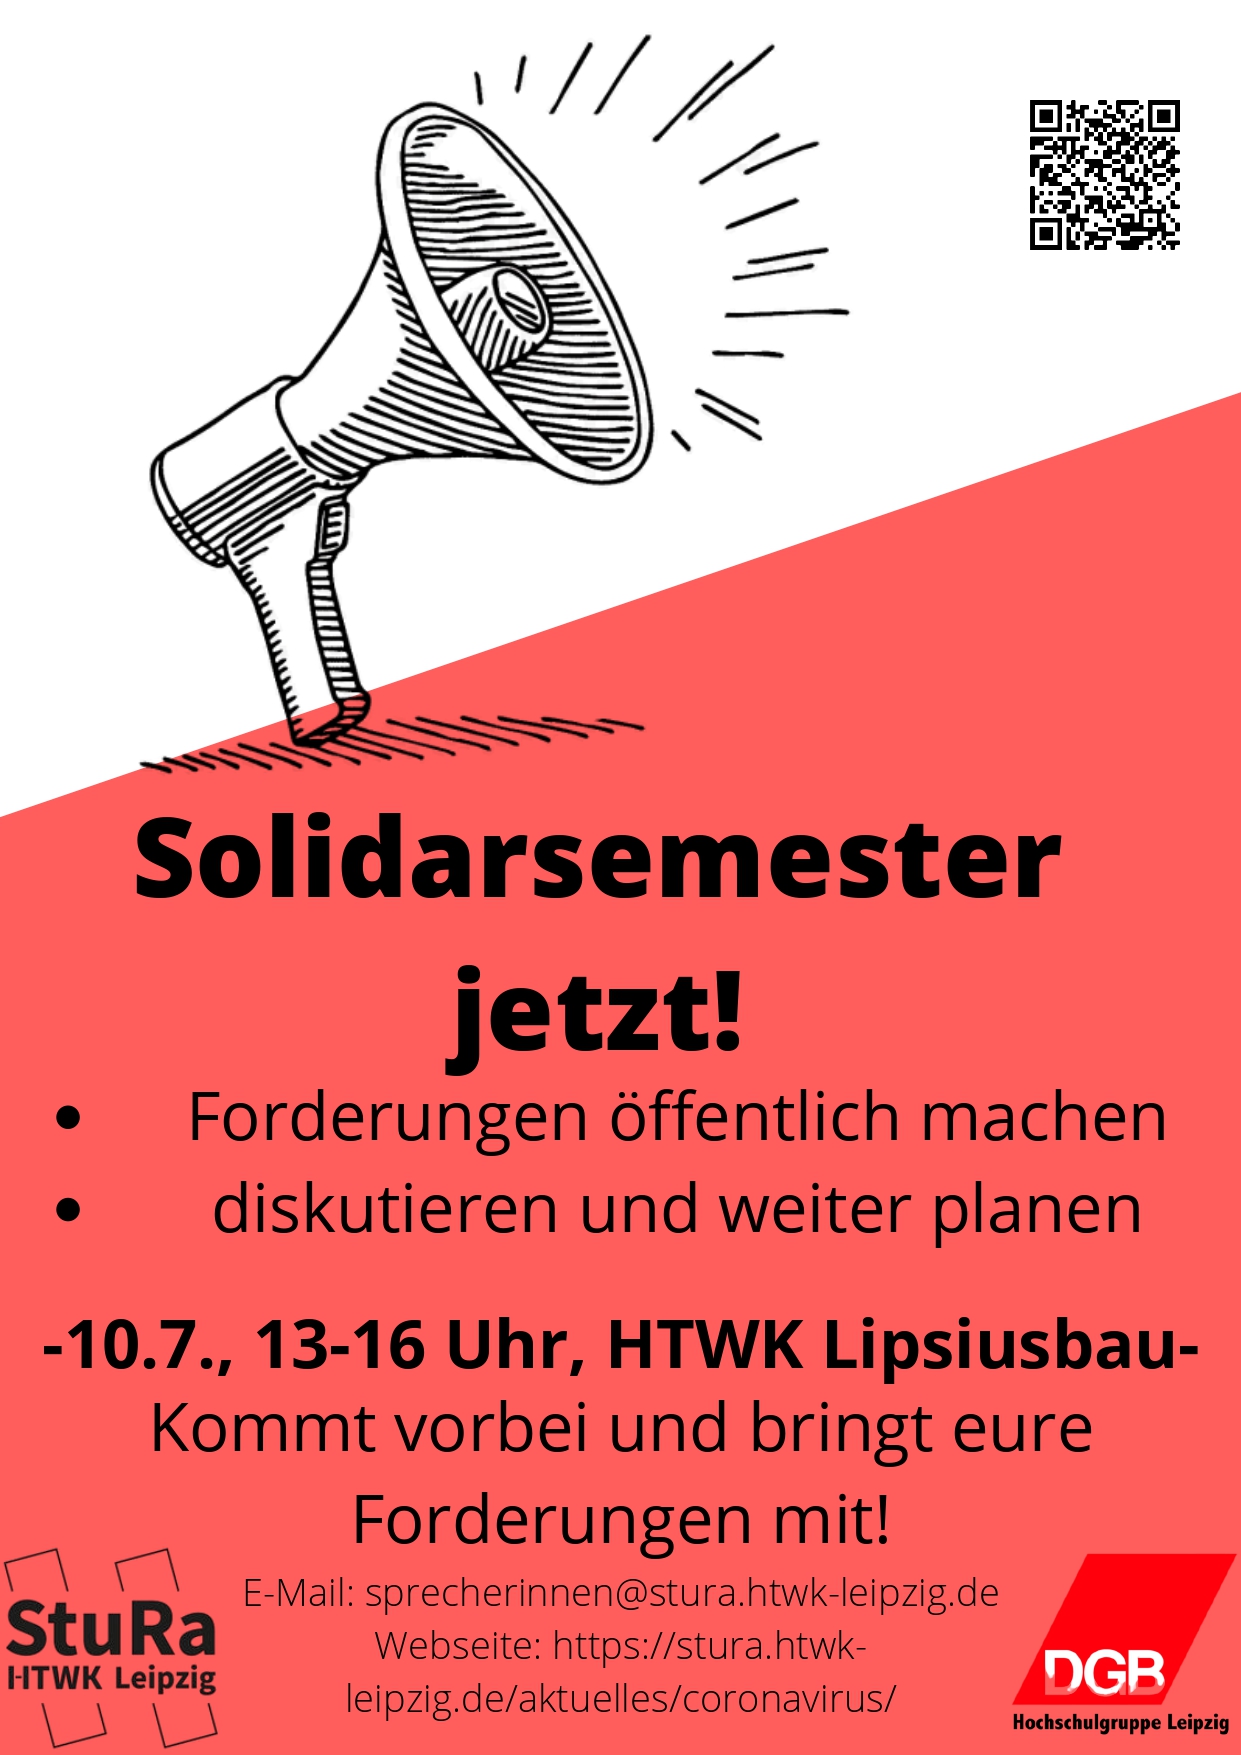 Ein Aufruf zu unserer Aktion "Solidarsemester jetzt!", welche am 10.07.2020 von 13.00 - 16.00 Uhr vor der HTWK Leipzig stattfinden wird.